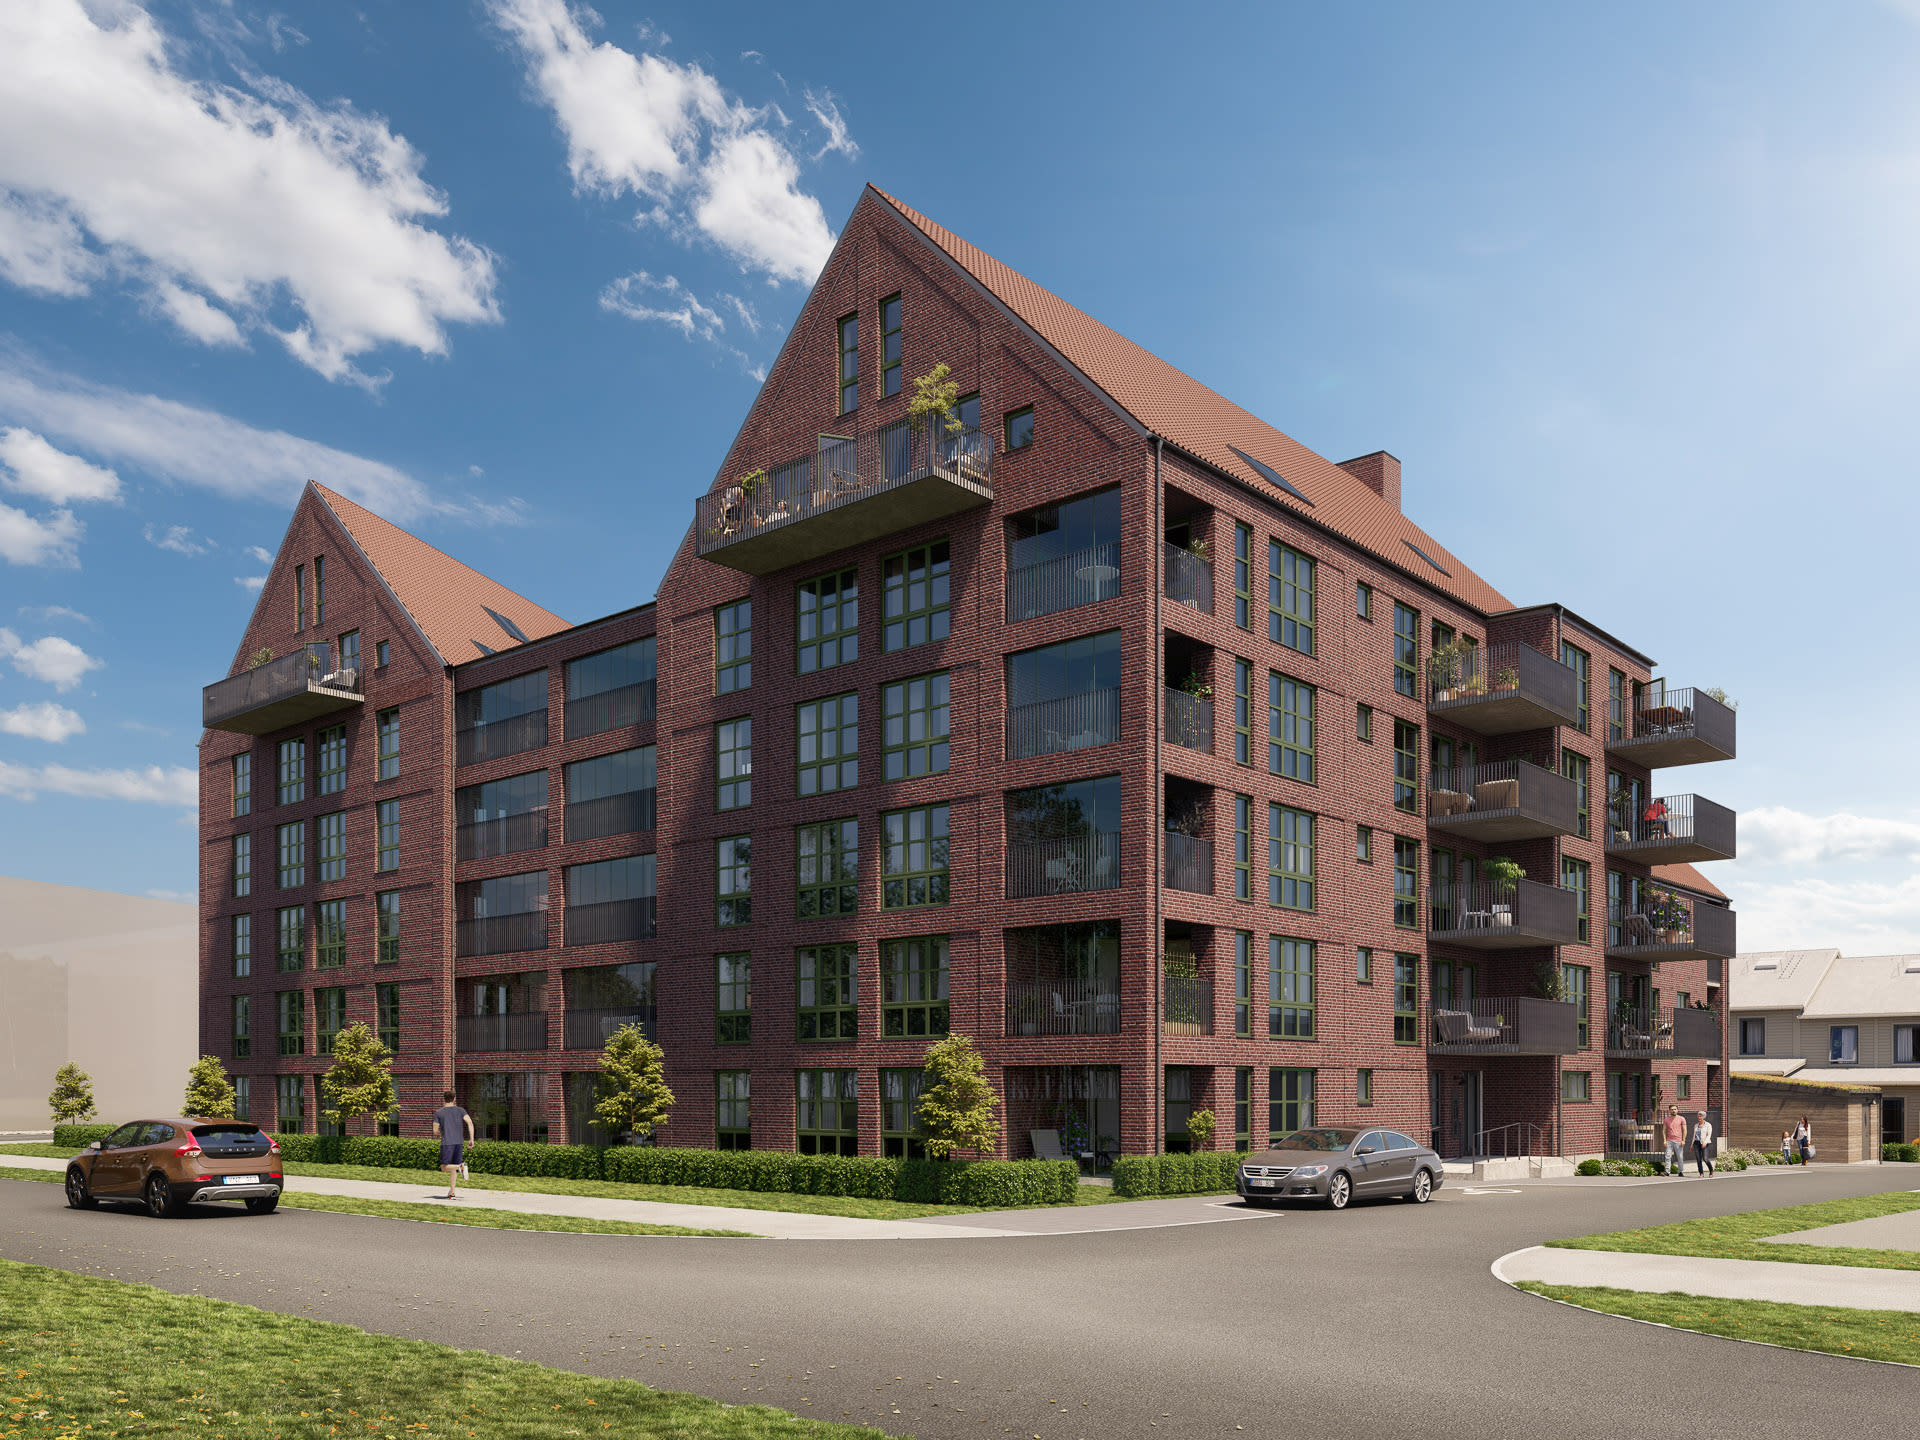 I Brf Fabriken finns 49 lägenheter. Arkitekturen hämtar inspiration från klassiska röda tegelbyggnader. De spetsiga taknockarna kompletteras med moderna spröjsade fönster.